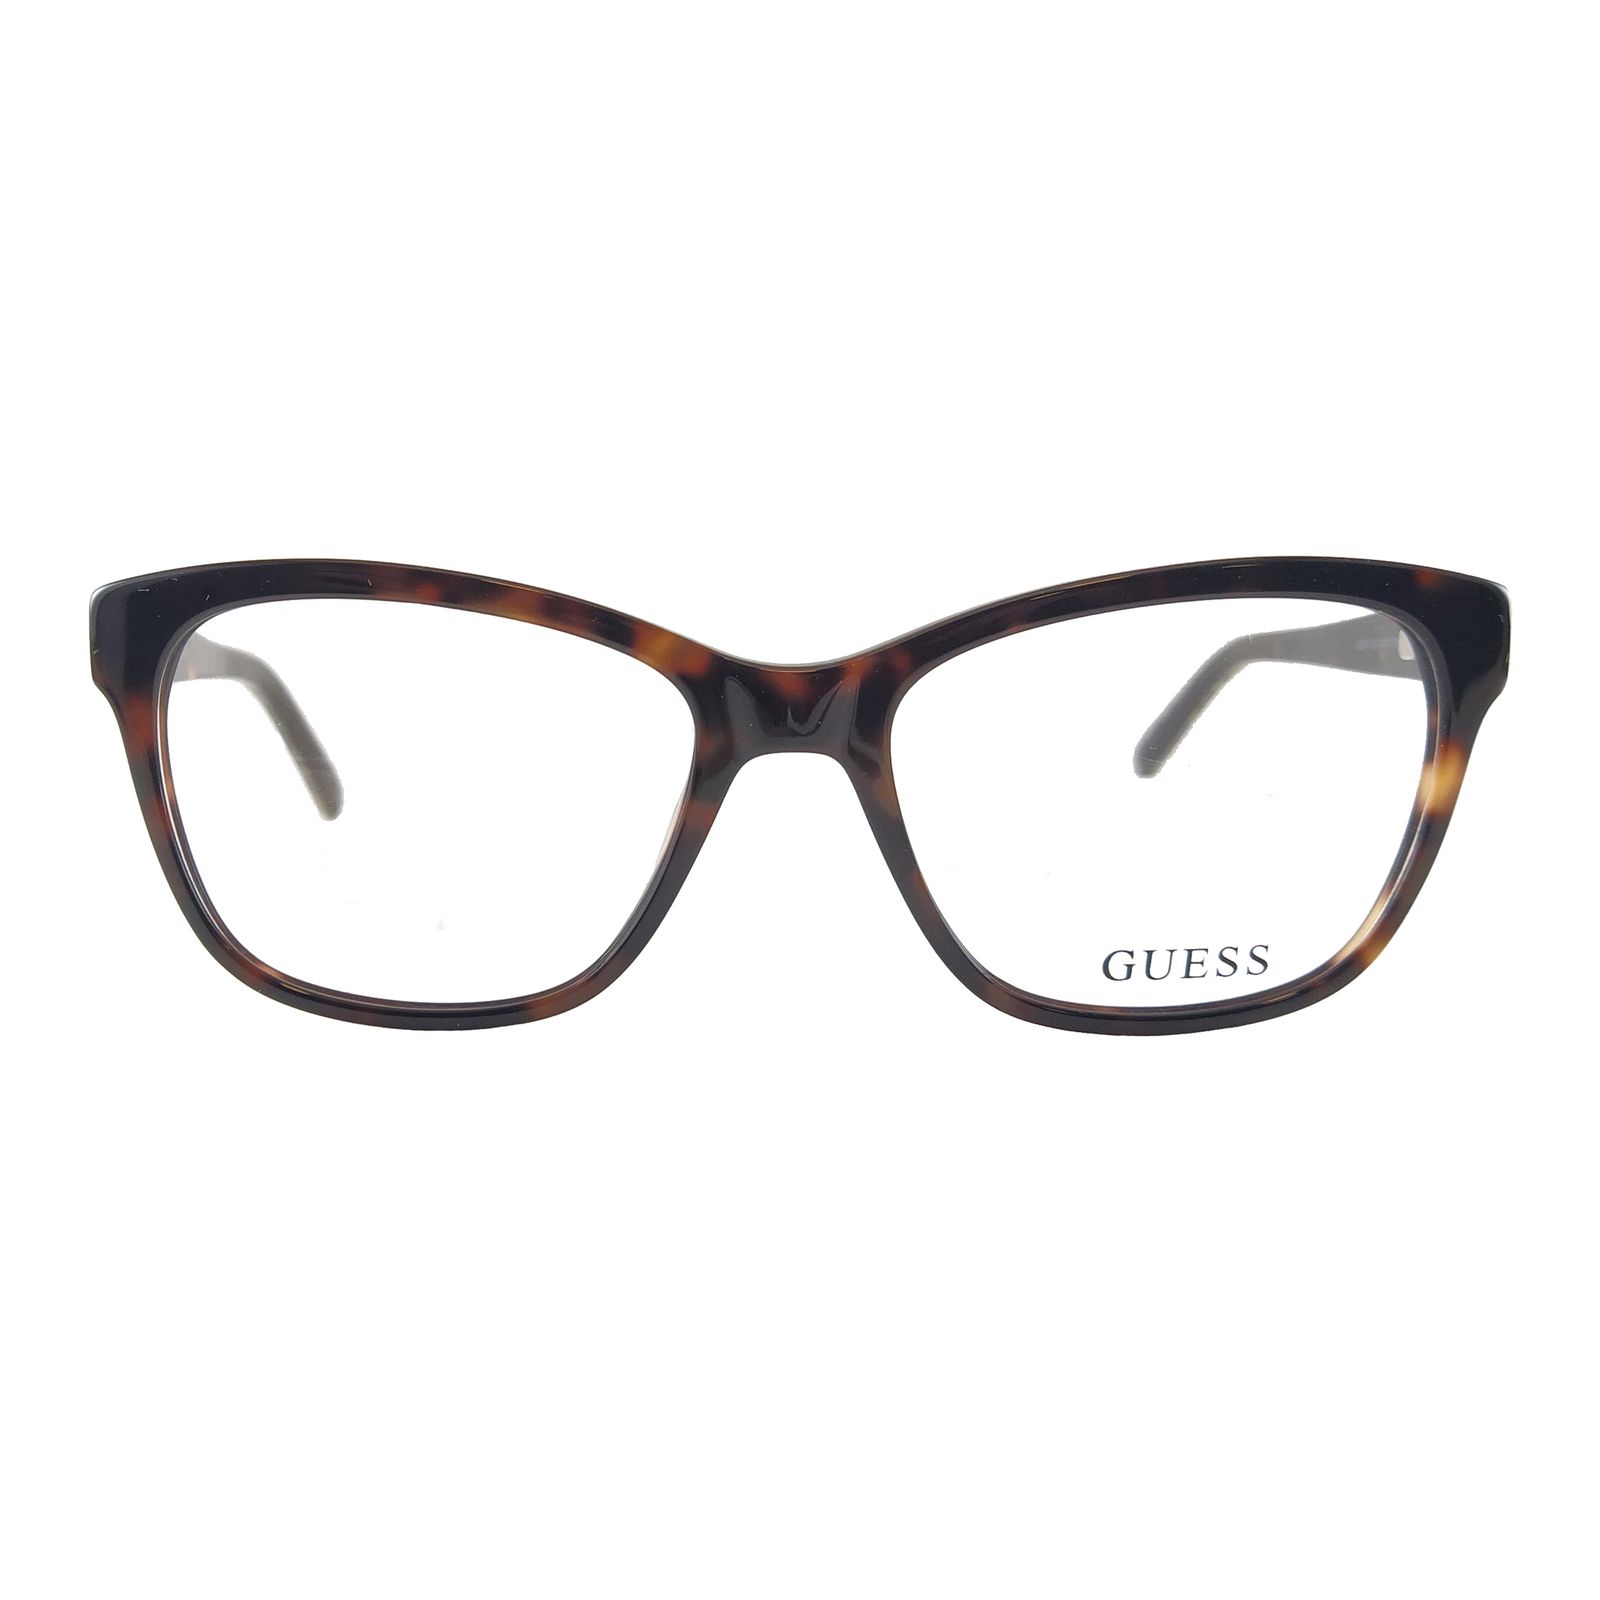 فریم عینک طبی زنانه گس مدل GU2541052 -  - 2